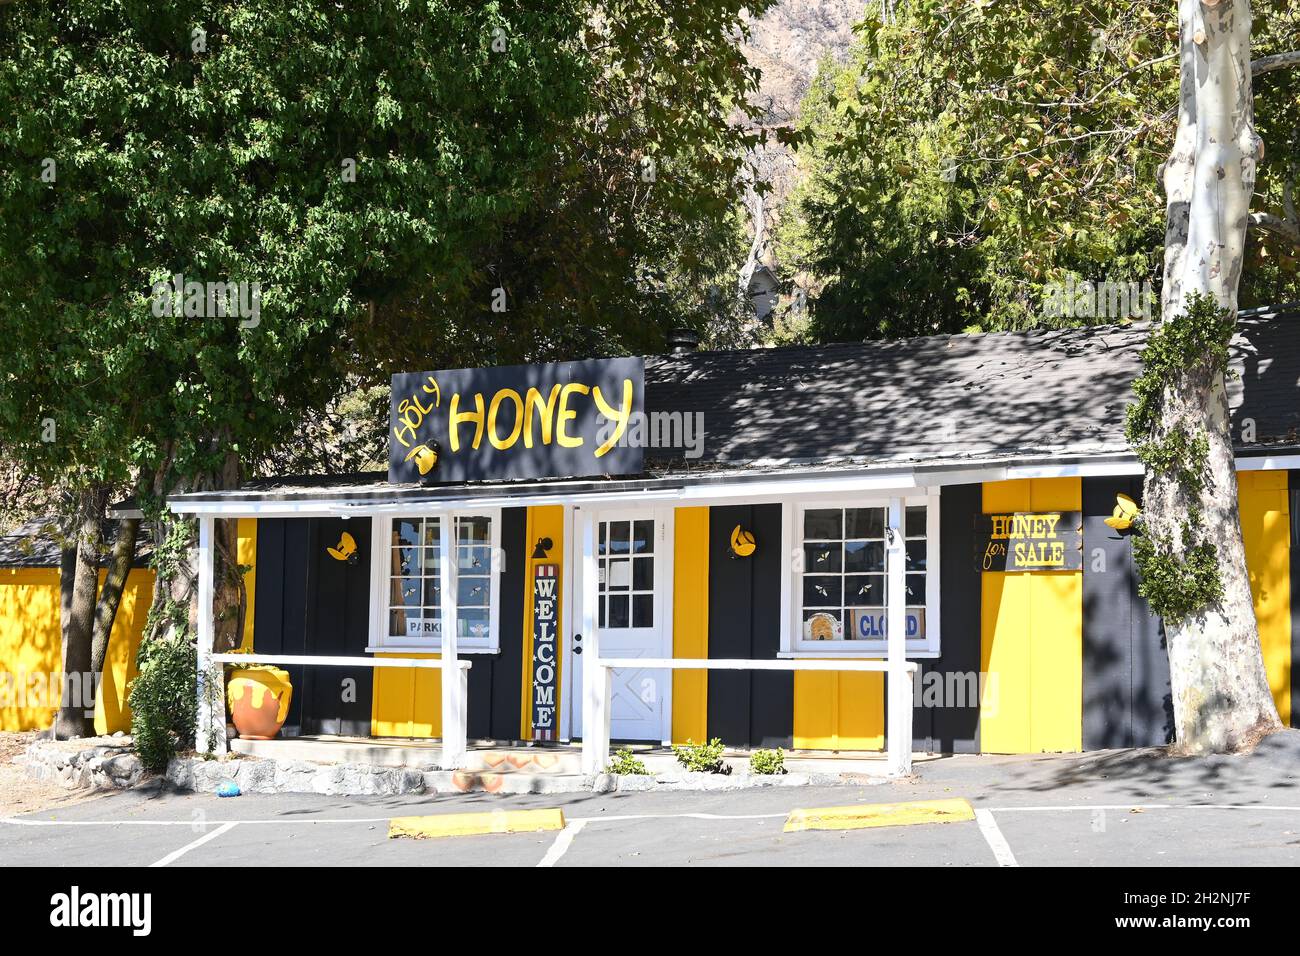 OAK Glen, CALIFORNIA - 10 Okt 2021: Holy-Honey produziert reinen, rohen, natürlichen, ungefilterten, handwerklich infundierten Honig. Stockfoto